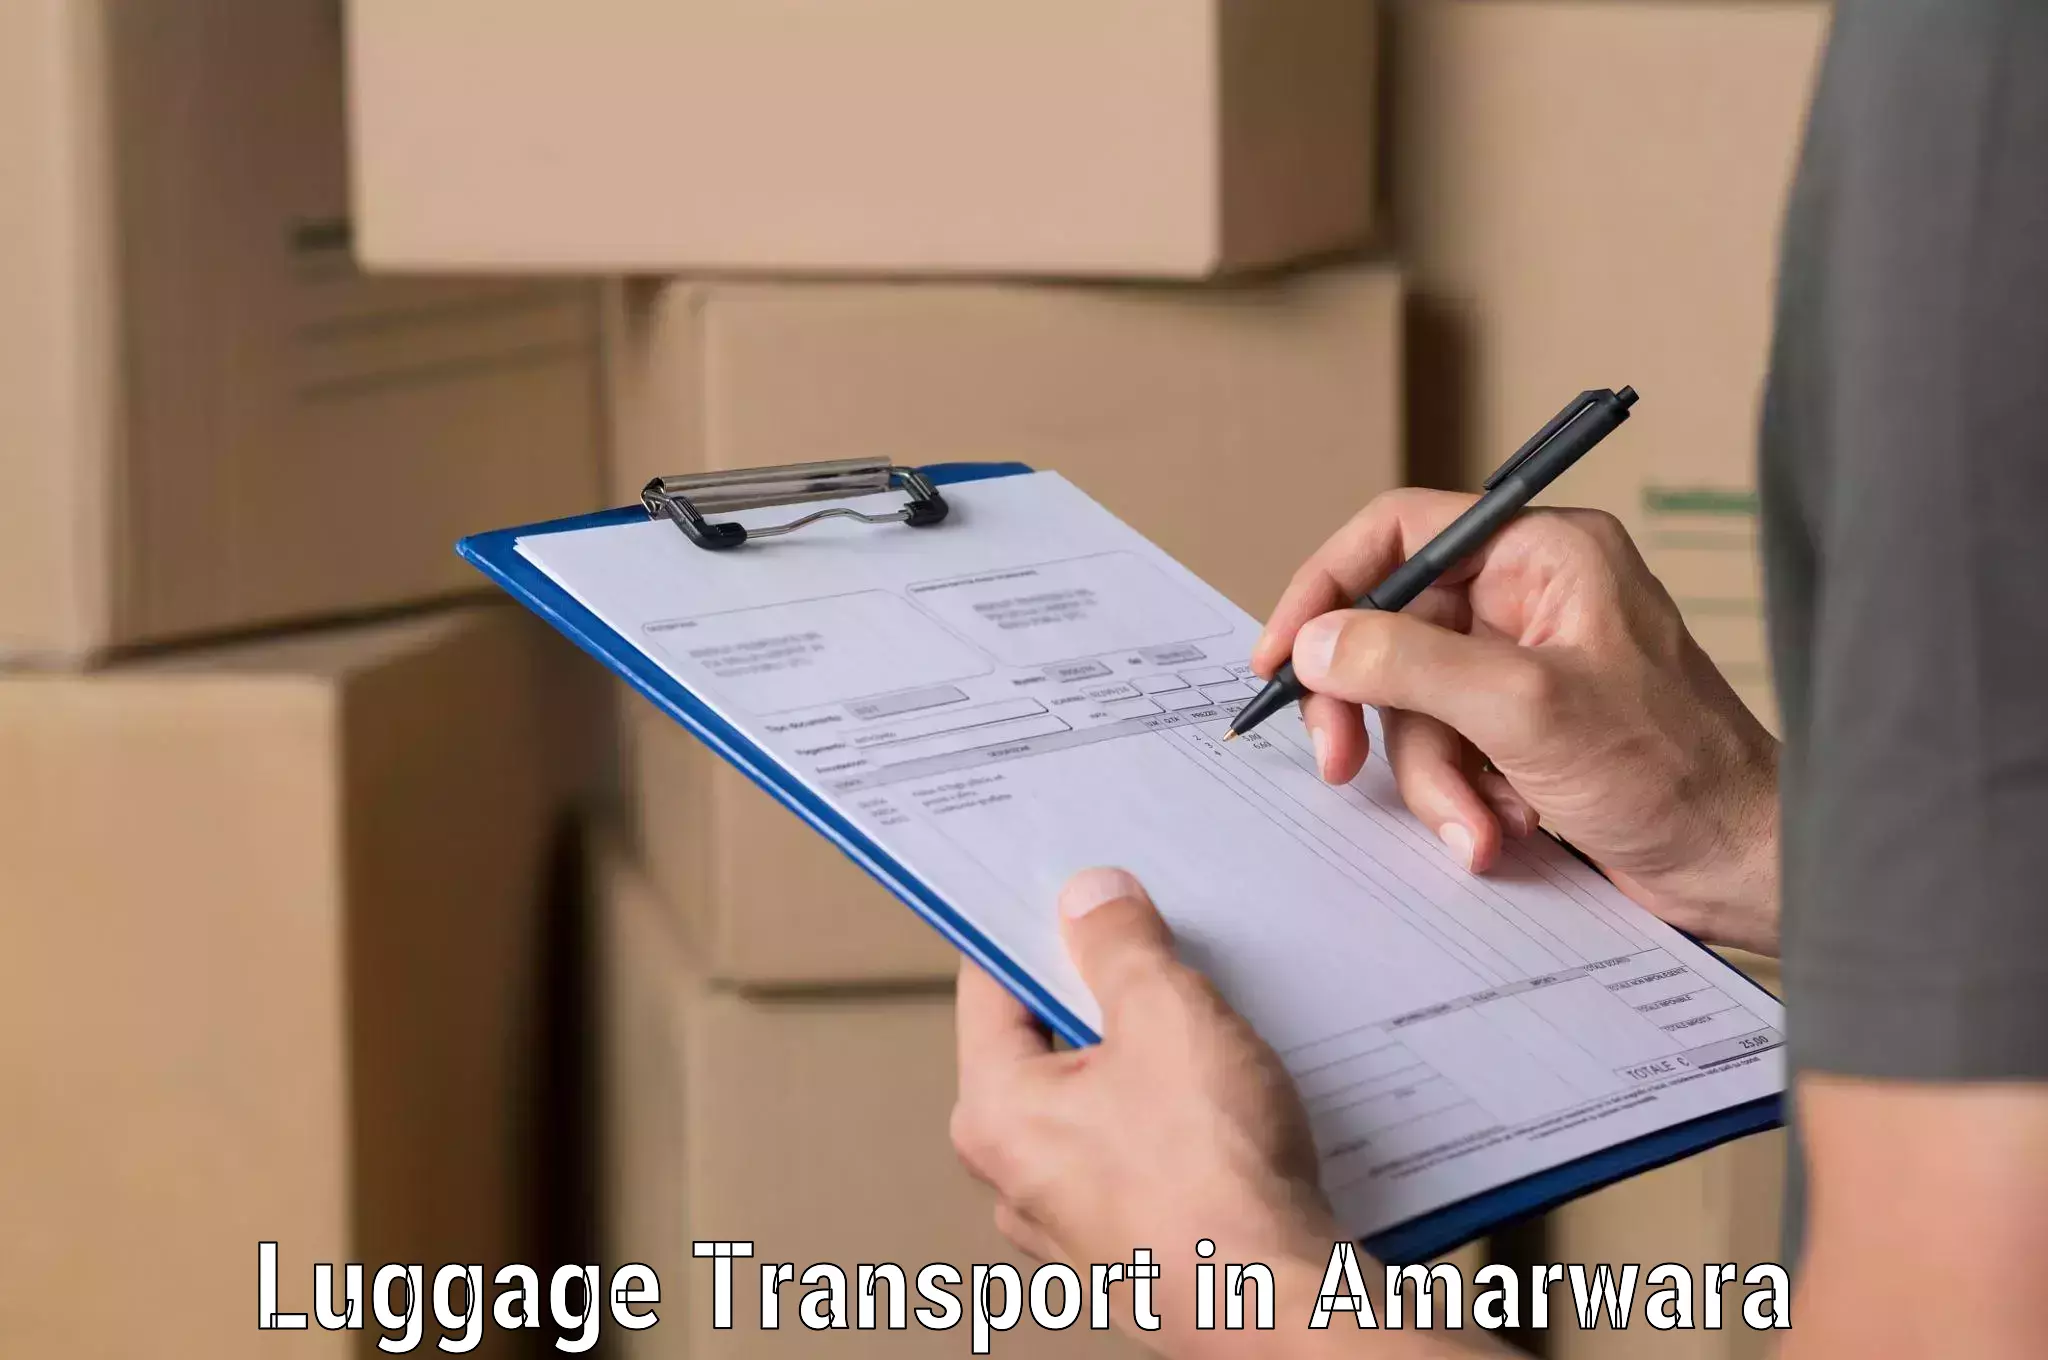 Luggage shipment strategy in Amarwara